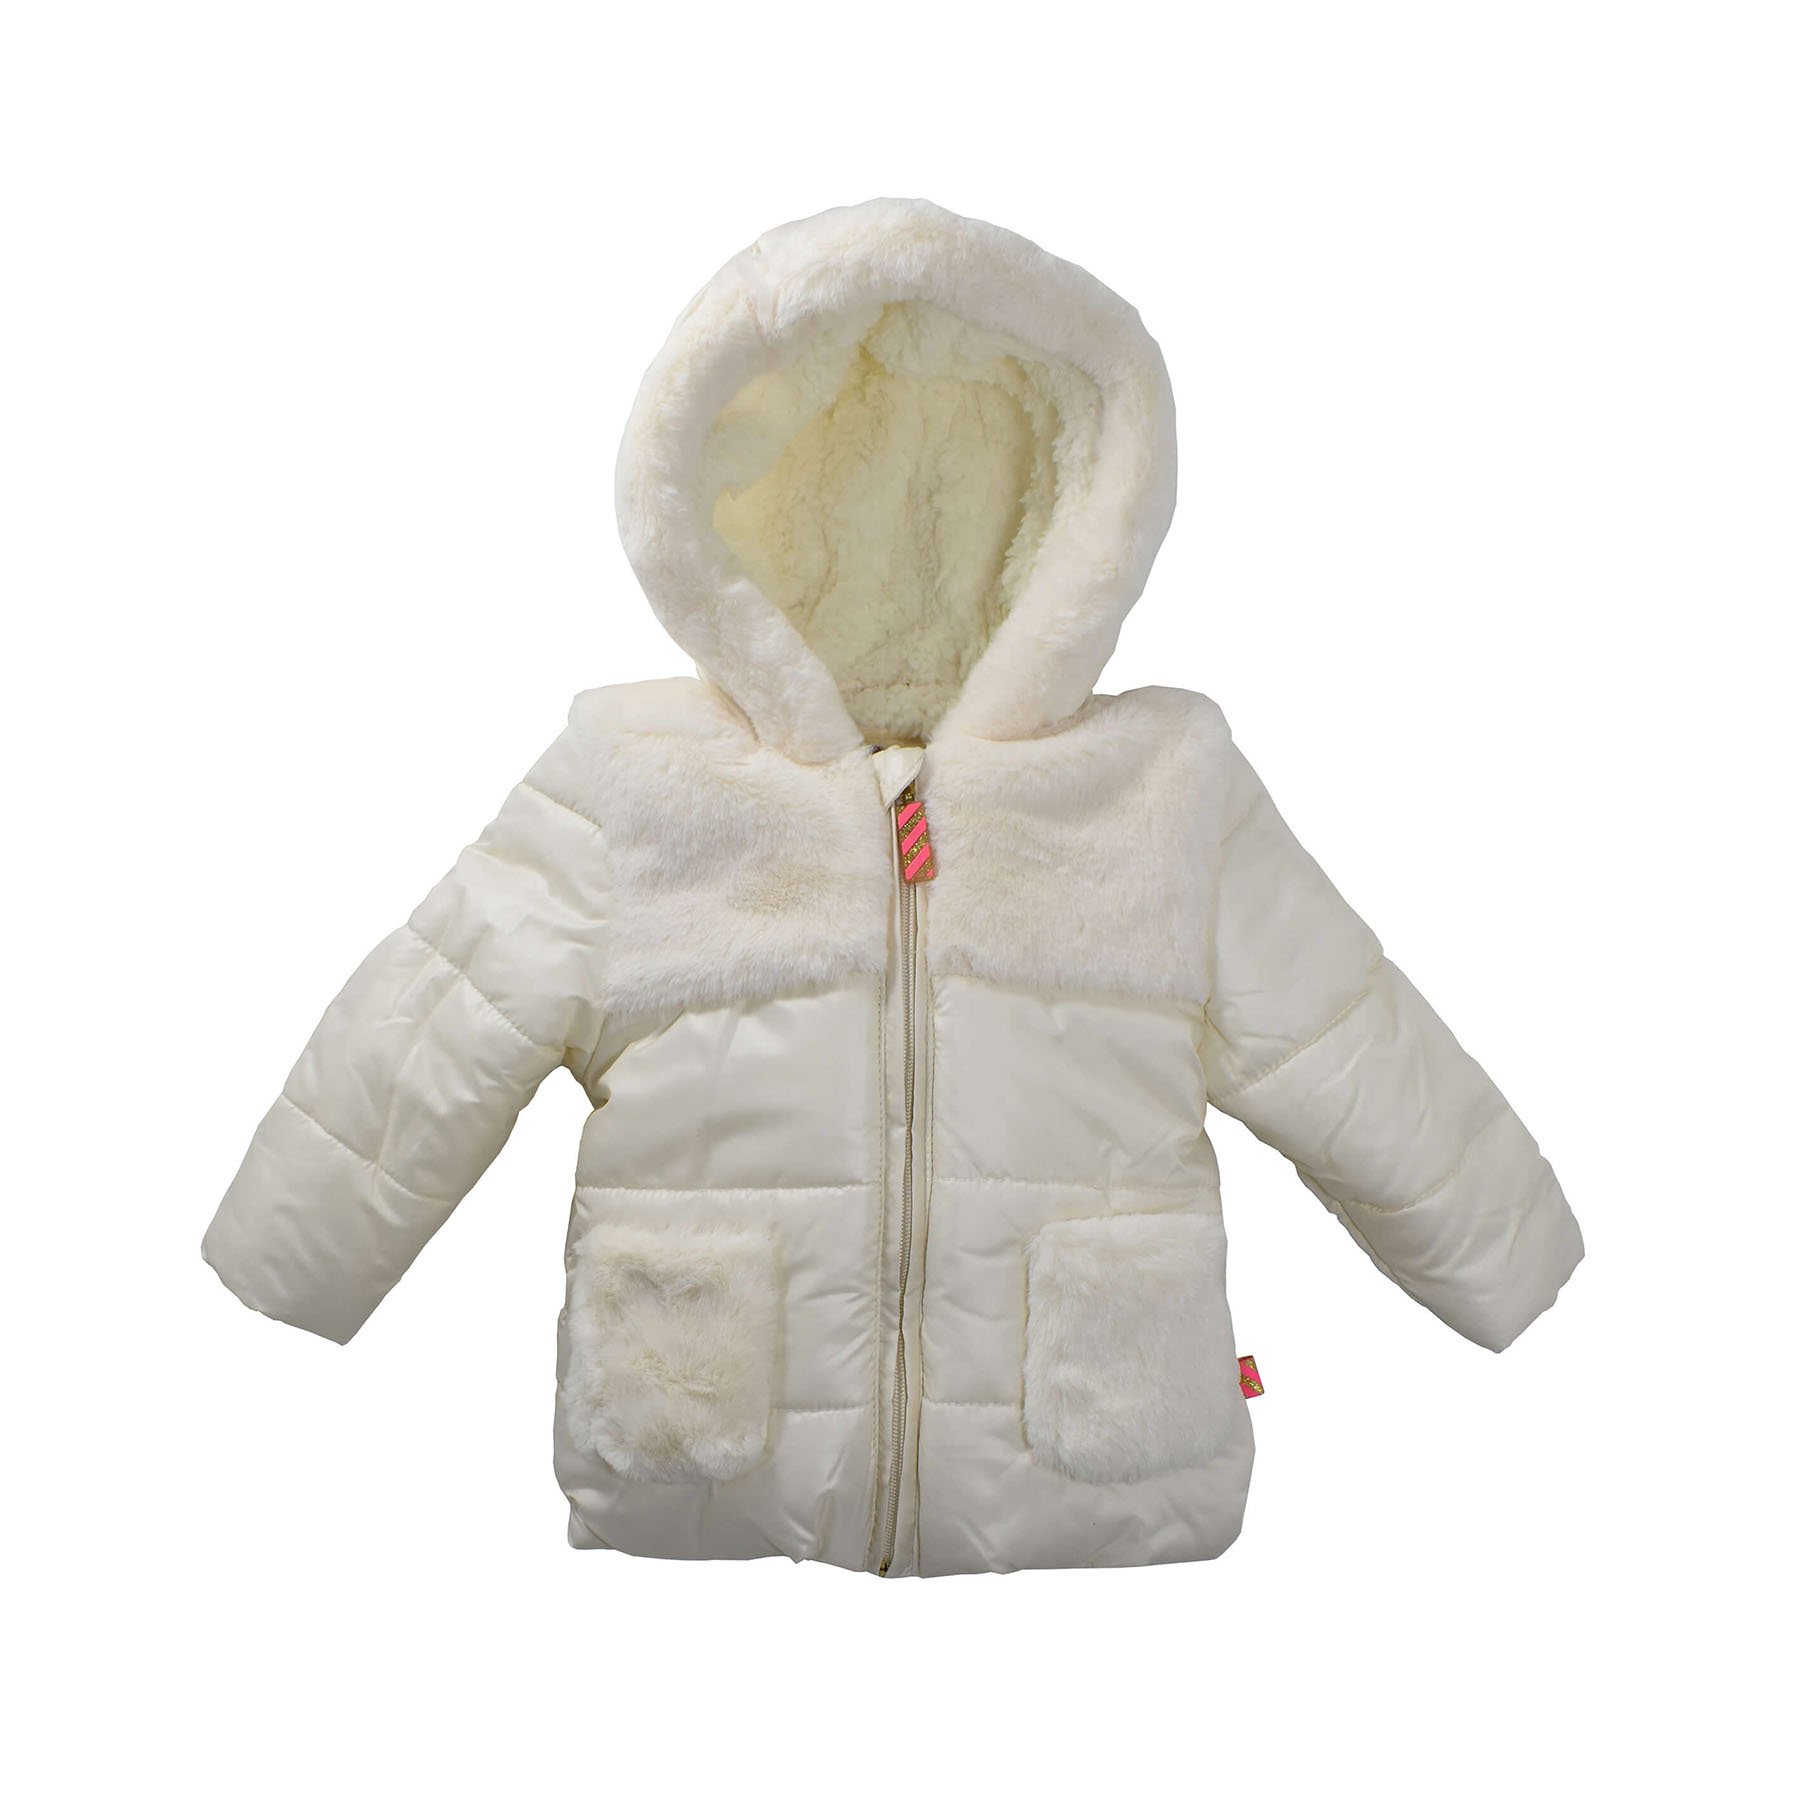 Bebekler için kışlık mont, erkek ve bebek kışlık krem renk mont